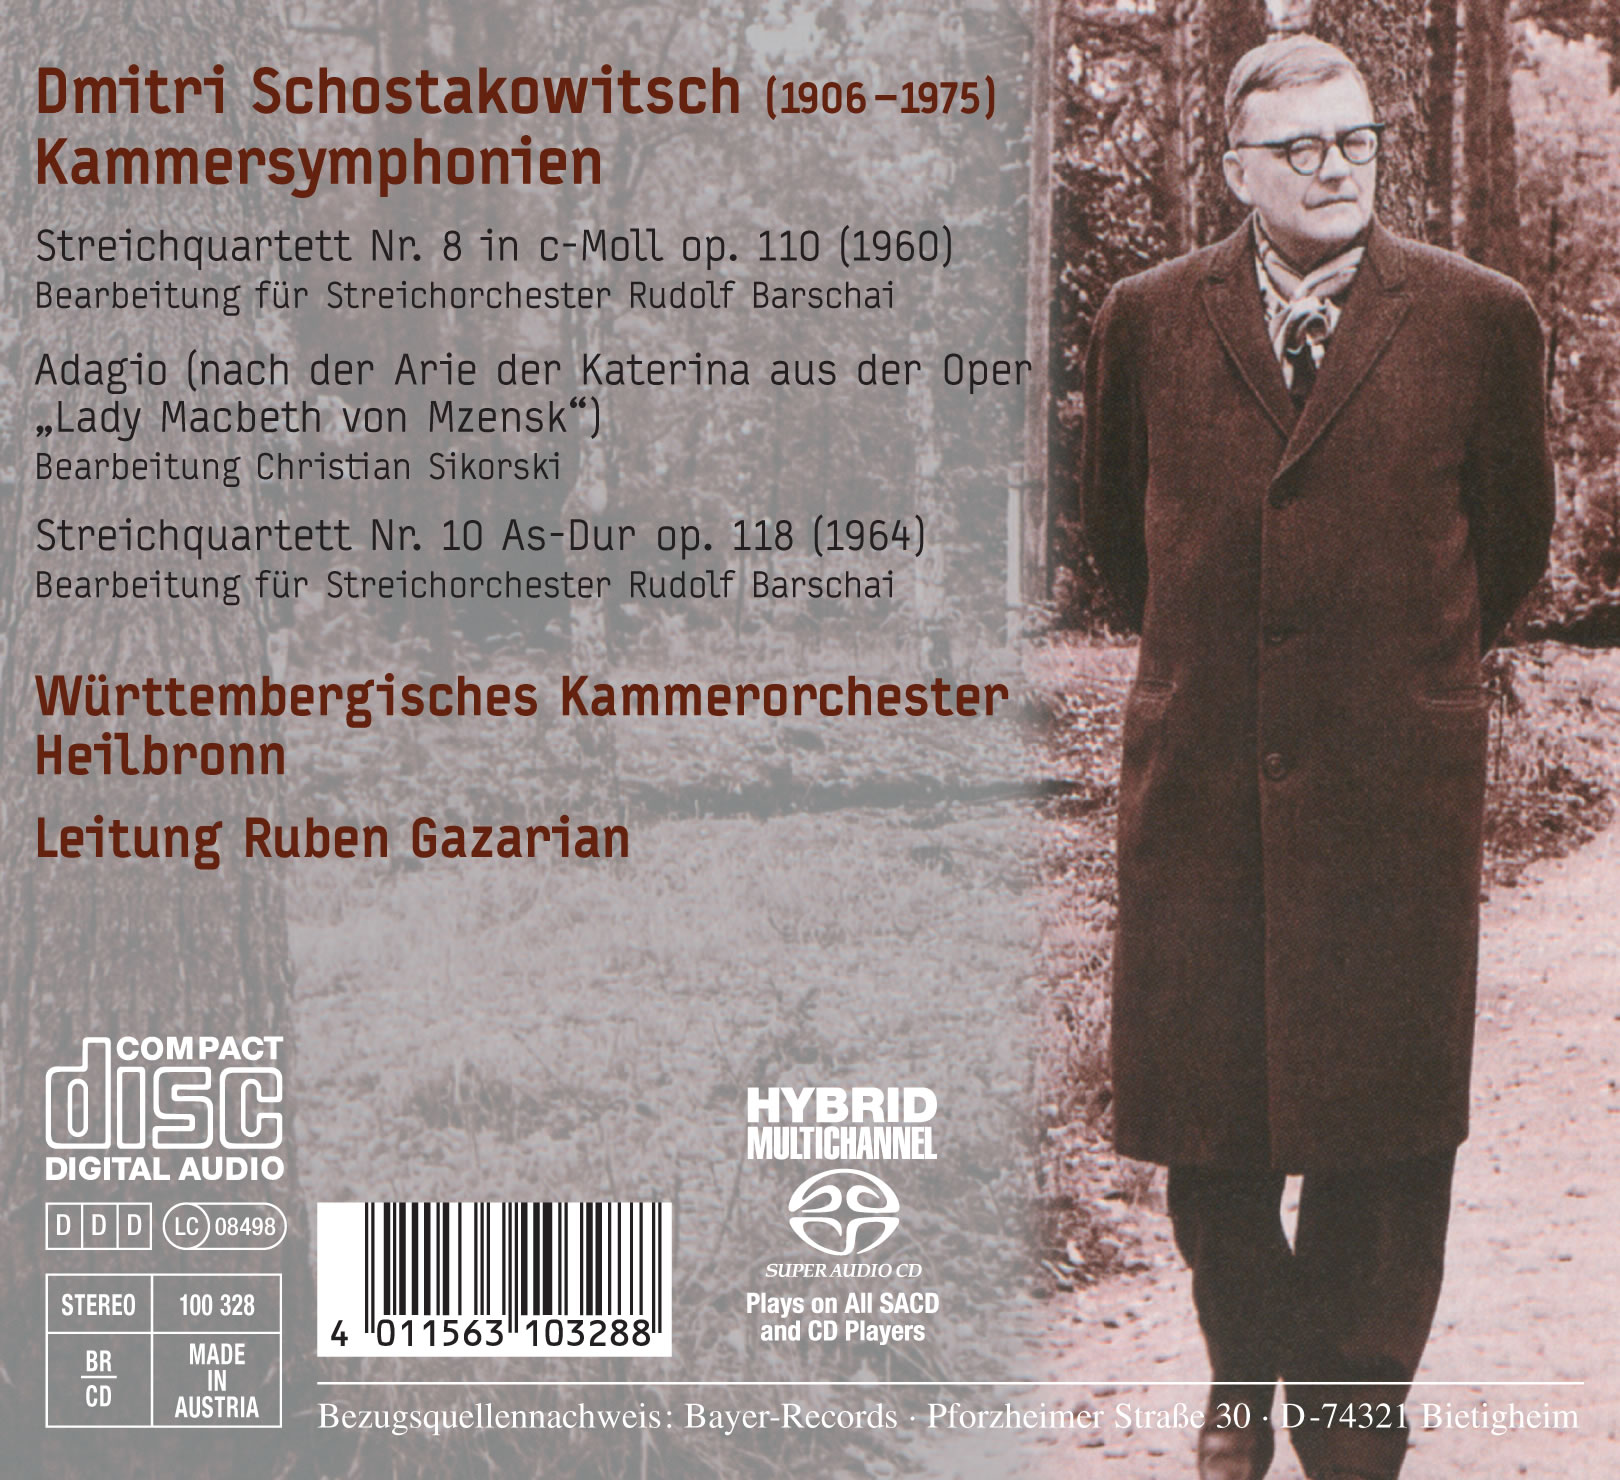 Dmitri Schostakowitsch - Kammersymphonien